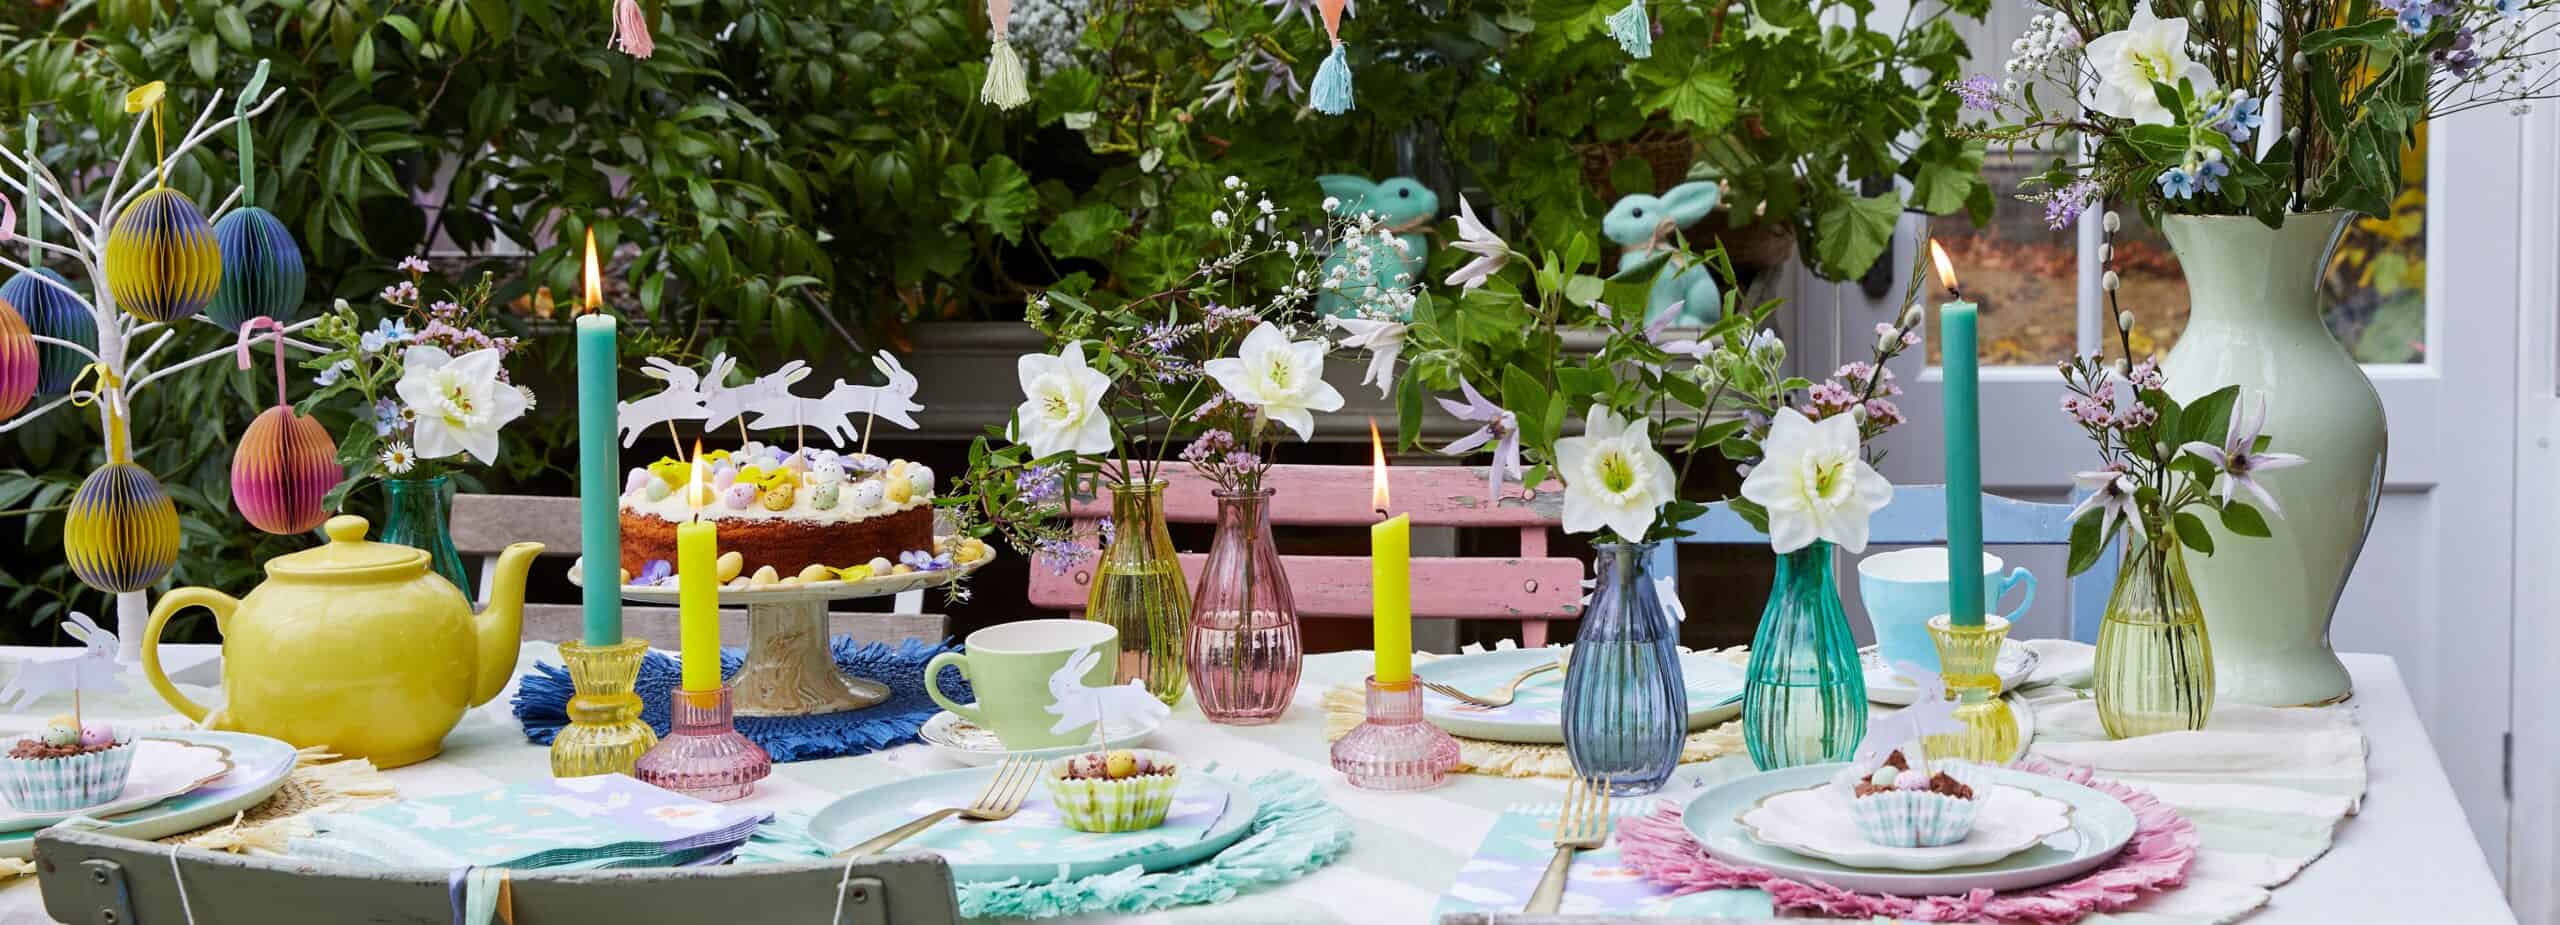 Decorazioni per Pasqua: accessori colorati per allestire la tavola